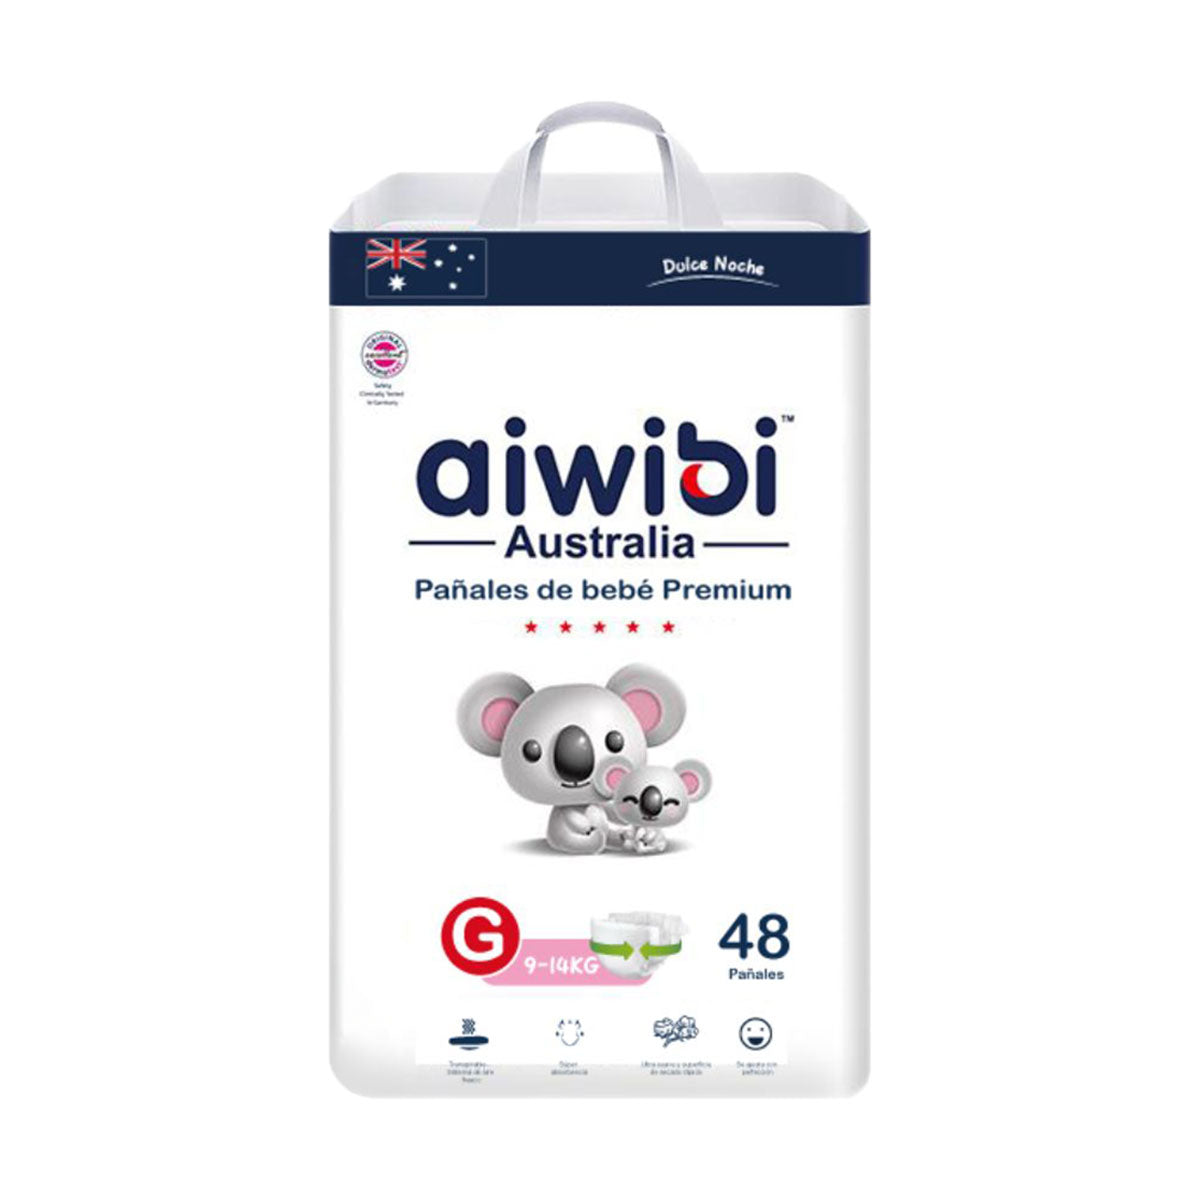 Pañales Aiwibi Premium Dulce Noche G (48 unidades) - 🇦🇺 Producto Australiano